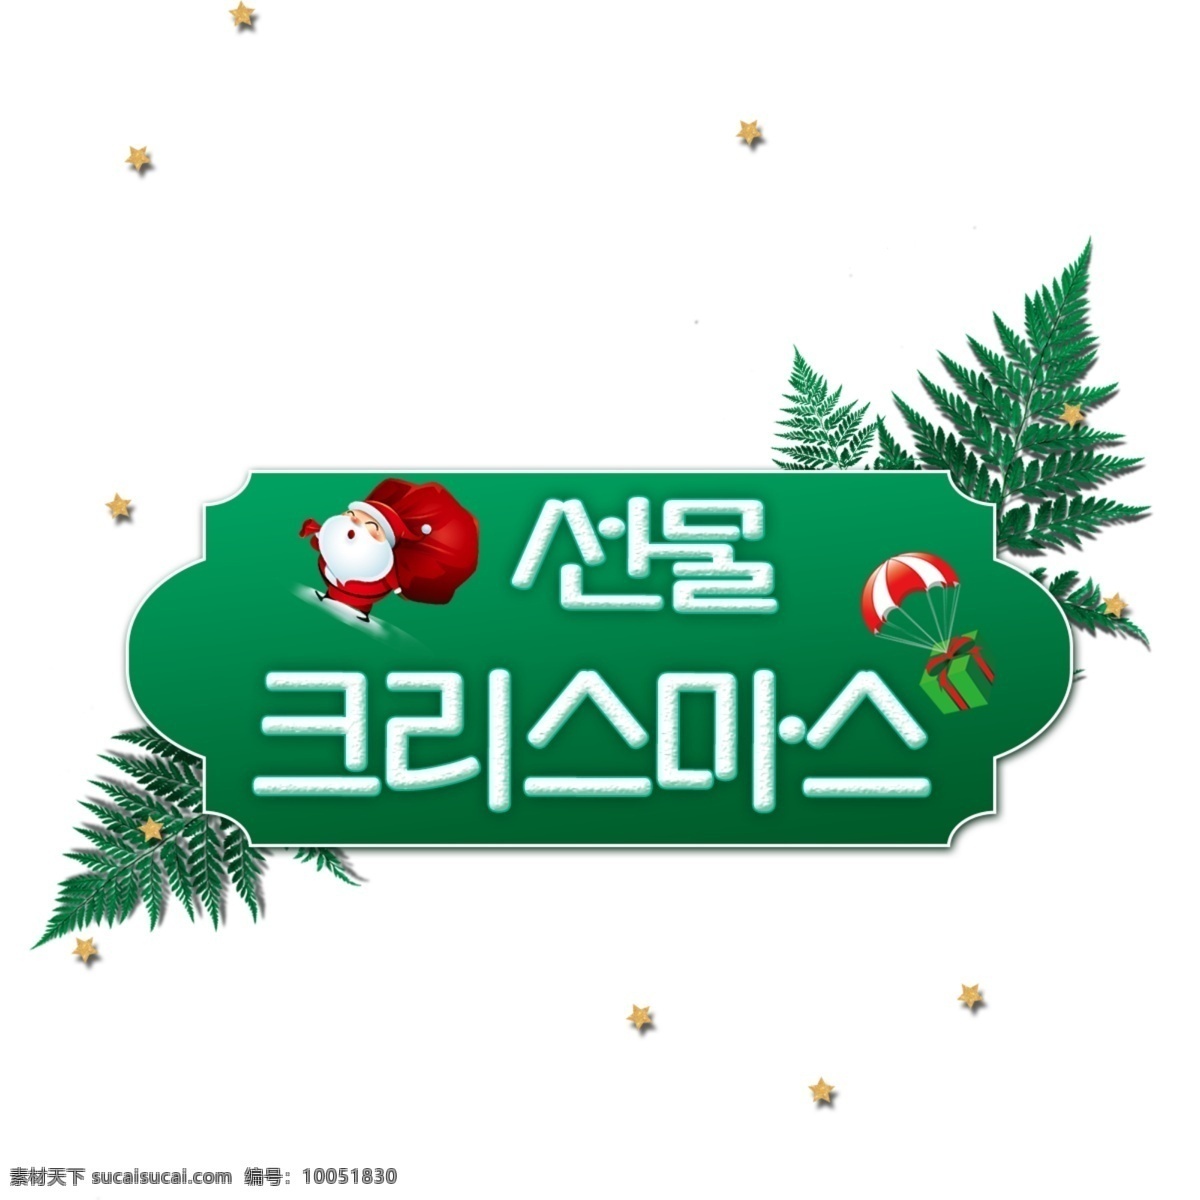 韩国 圣诞 海报 文字 礼物 圣诞老人 字体 字符 韩国性格 节日 圣诞节的海报 圣诞节 chri